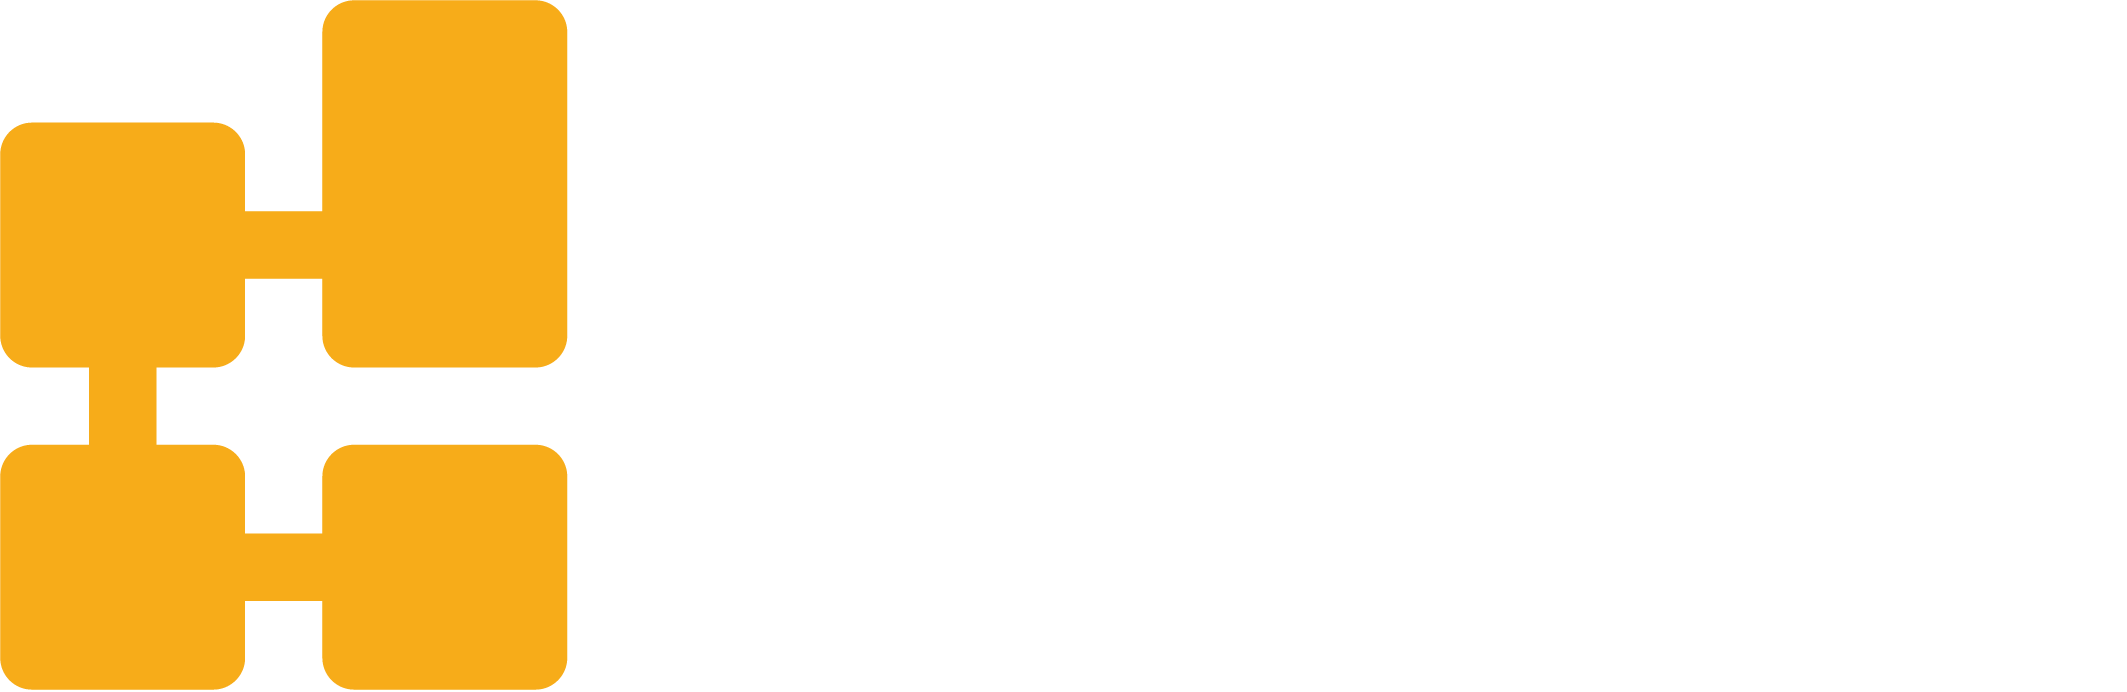 FITO Sistemas - Criação de sites, sistemas e integrações